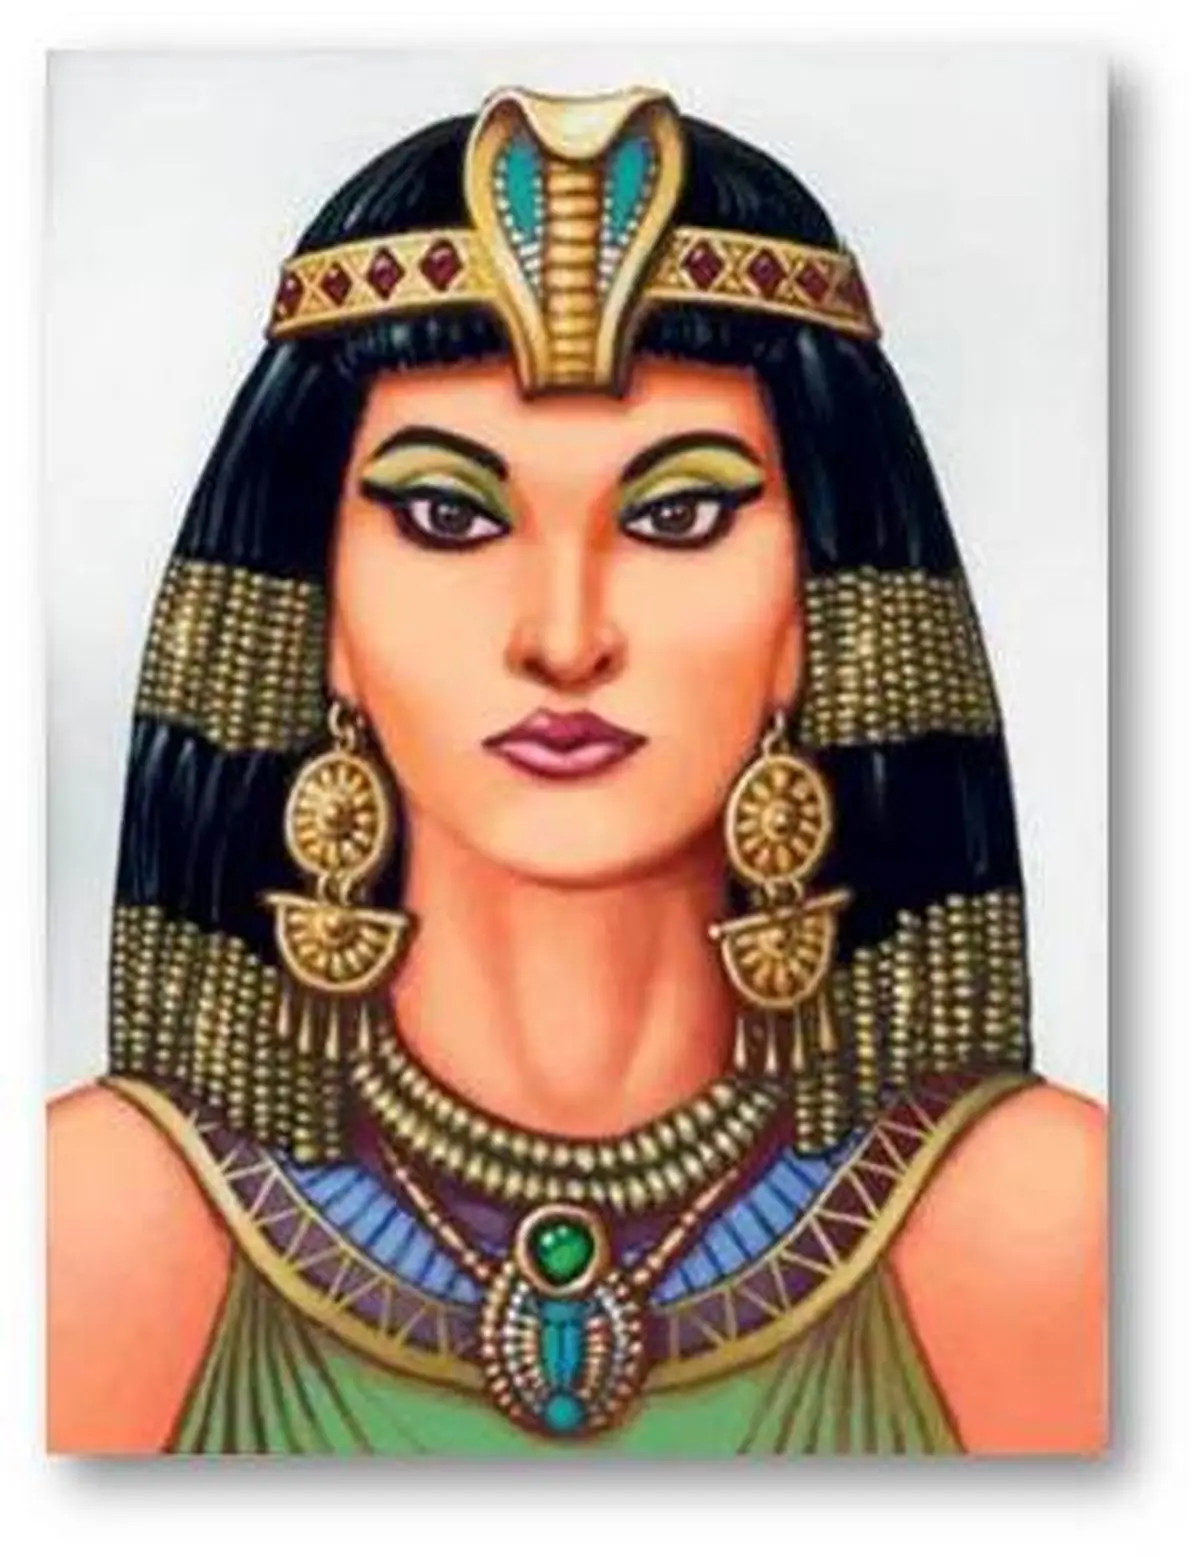  راز زیبایی پوست زنان مصری